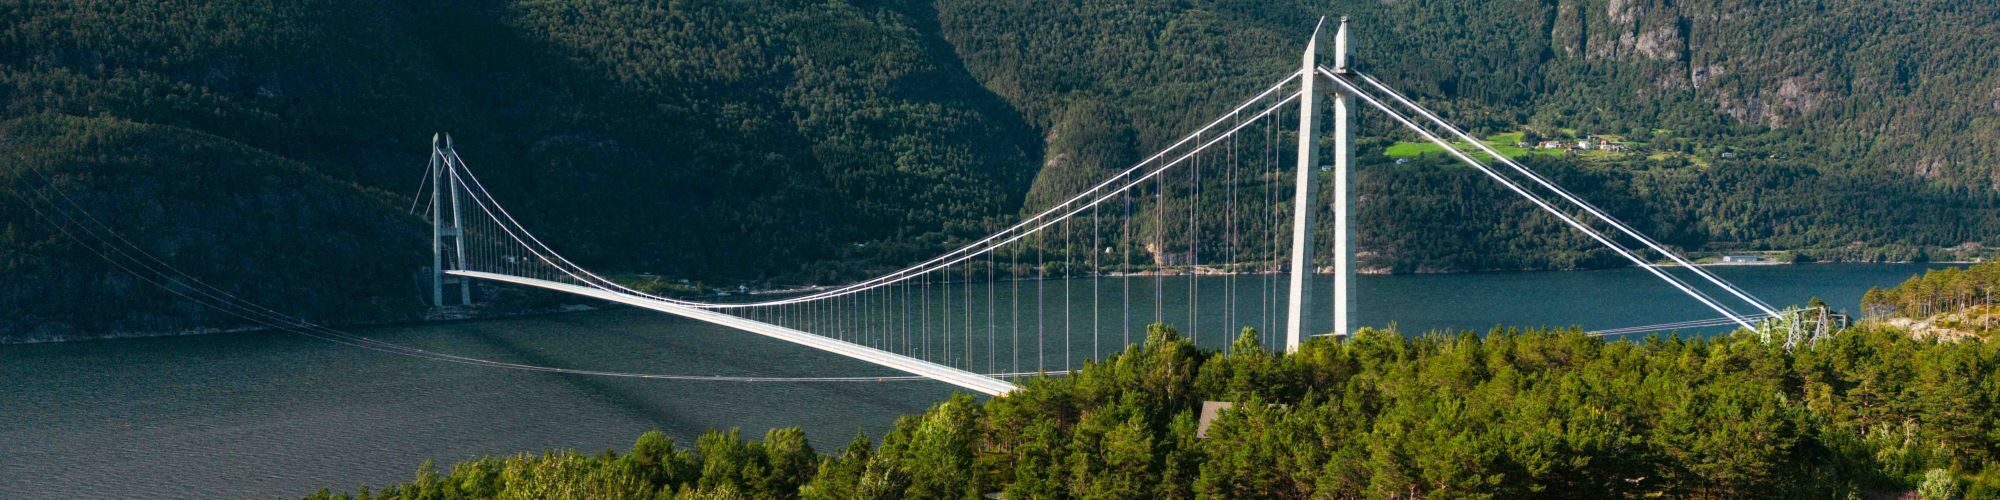 Hardanger Bridge - suspension bridge between two mountain slopes.